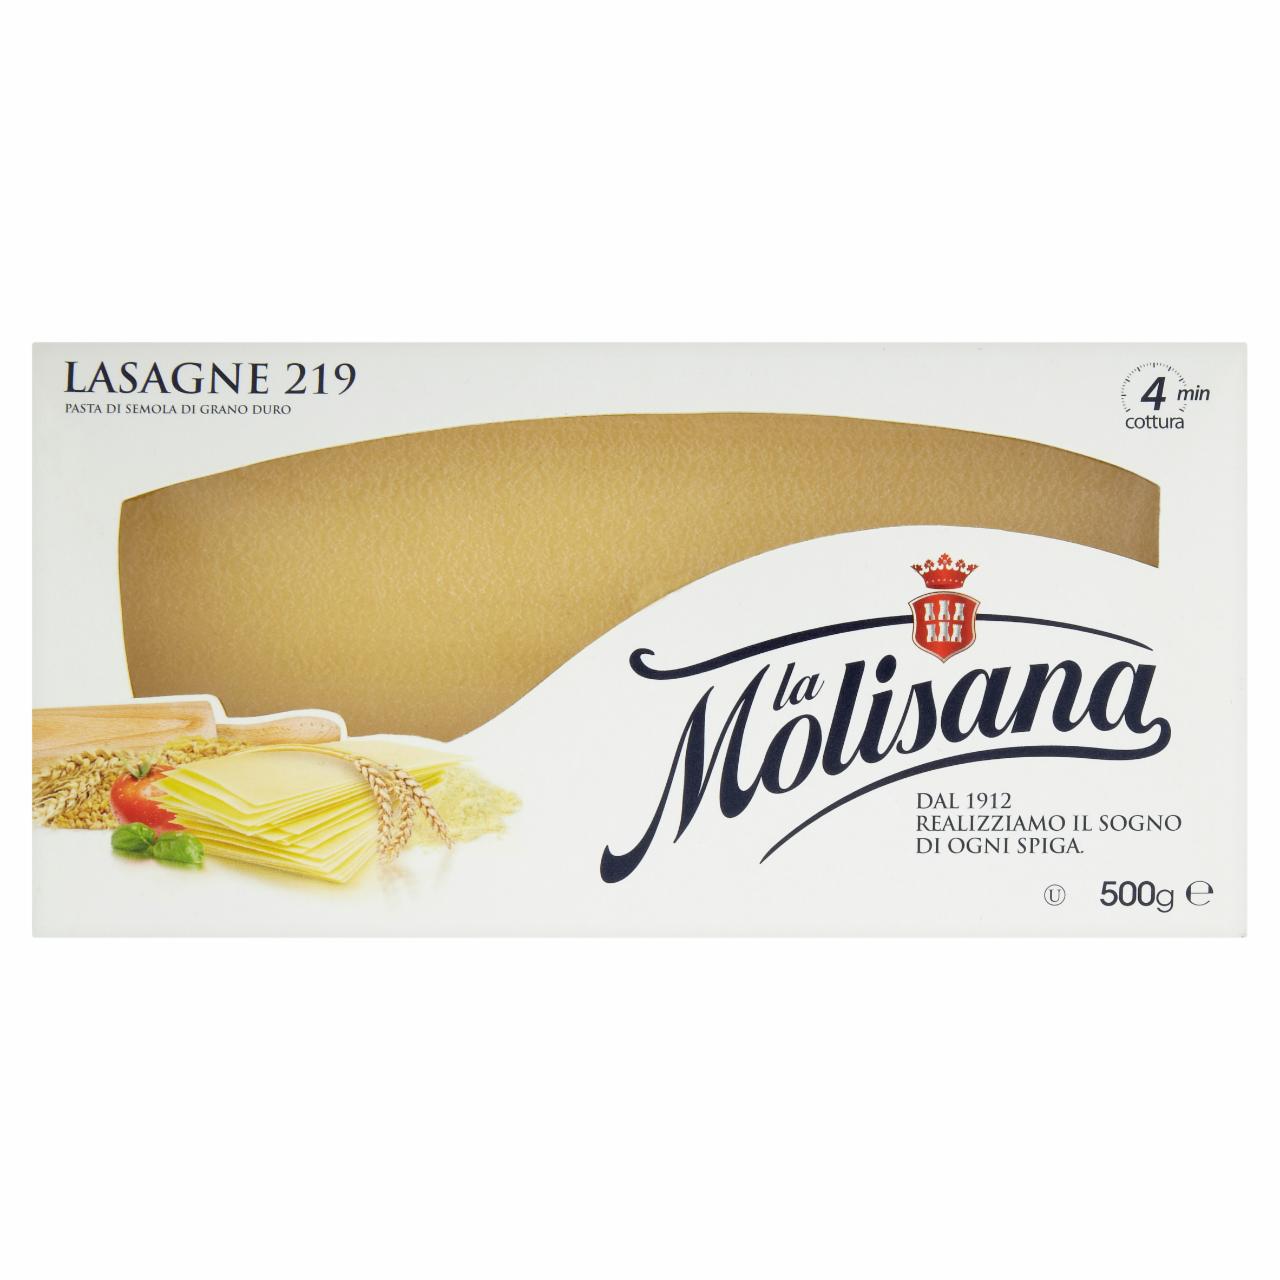 Képek - La Molisana Lasagne 219 durum búzadarából készült tészta 500 g